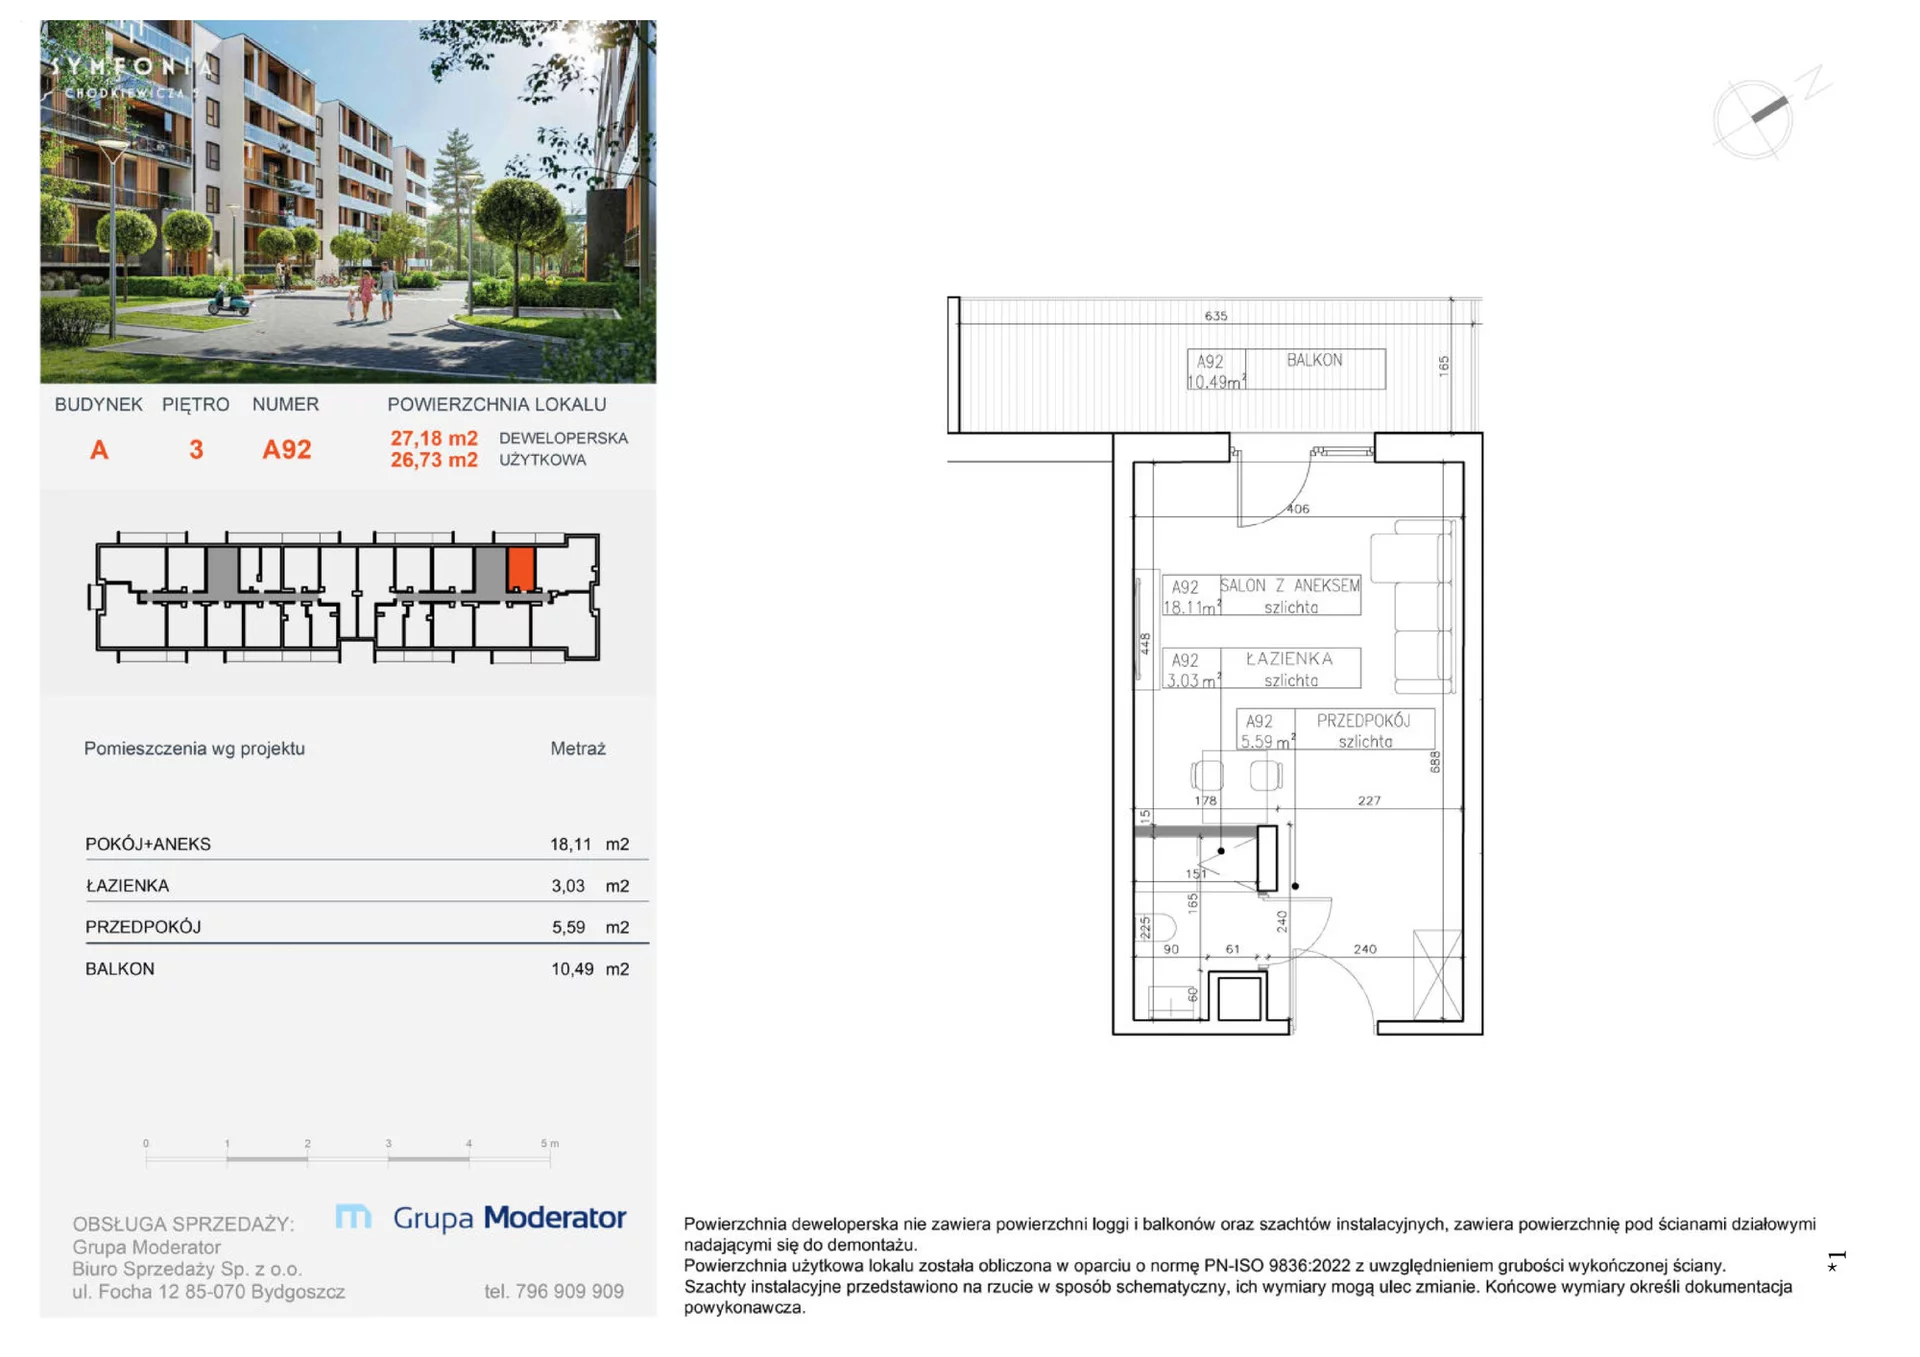 Apartament na sprzedaż 26,73 m², piętro 3, oferta nr A92